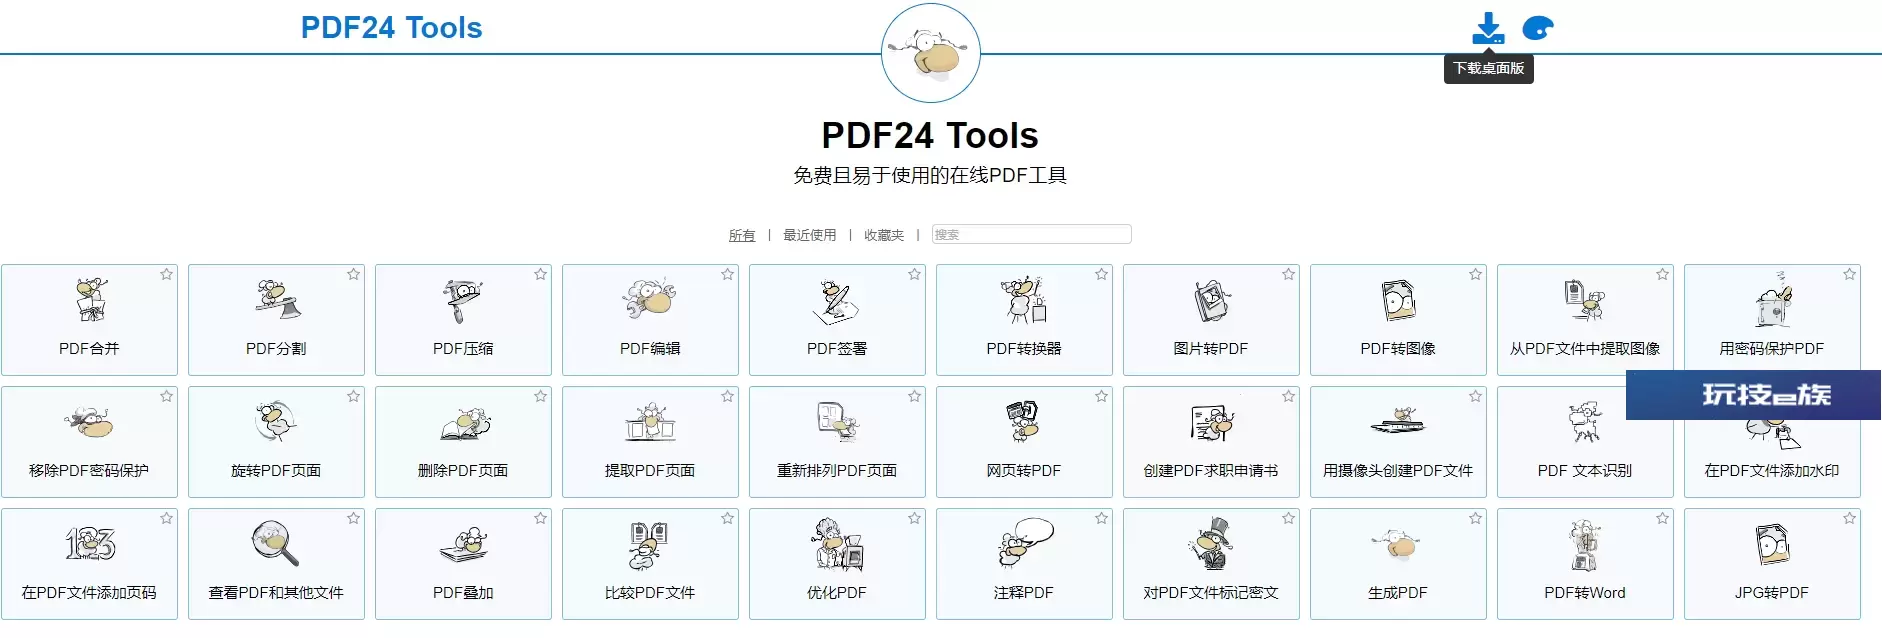 【免费工具】多功能免费实用的PDF24工具箱